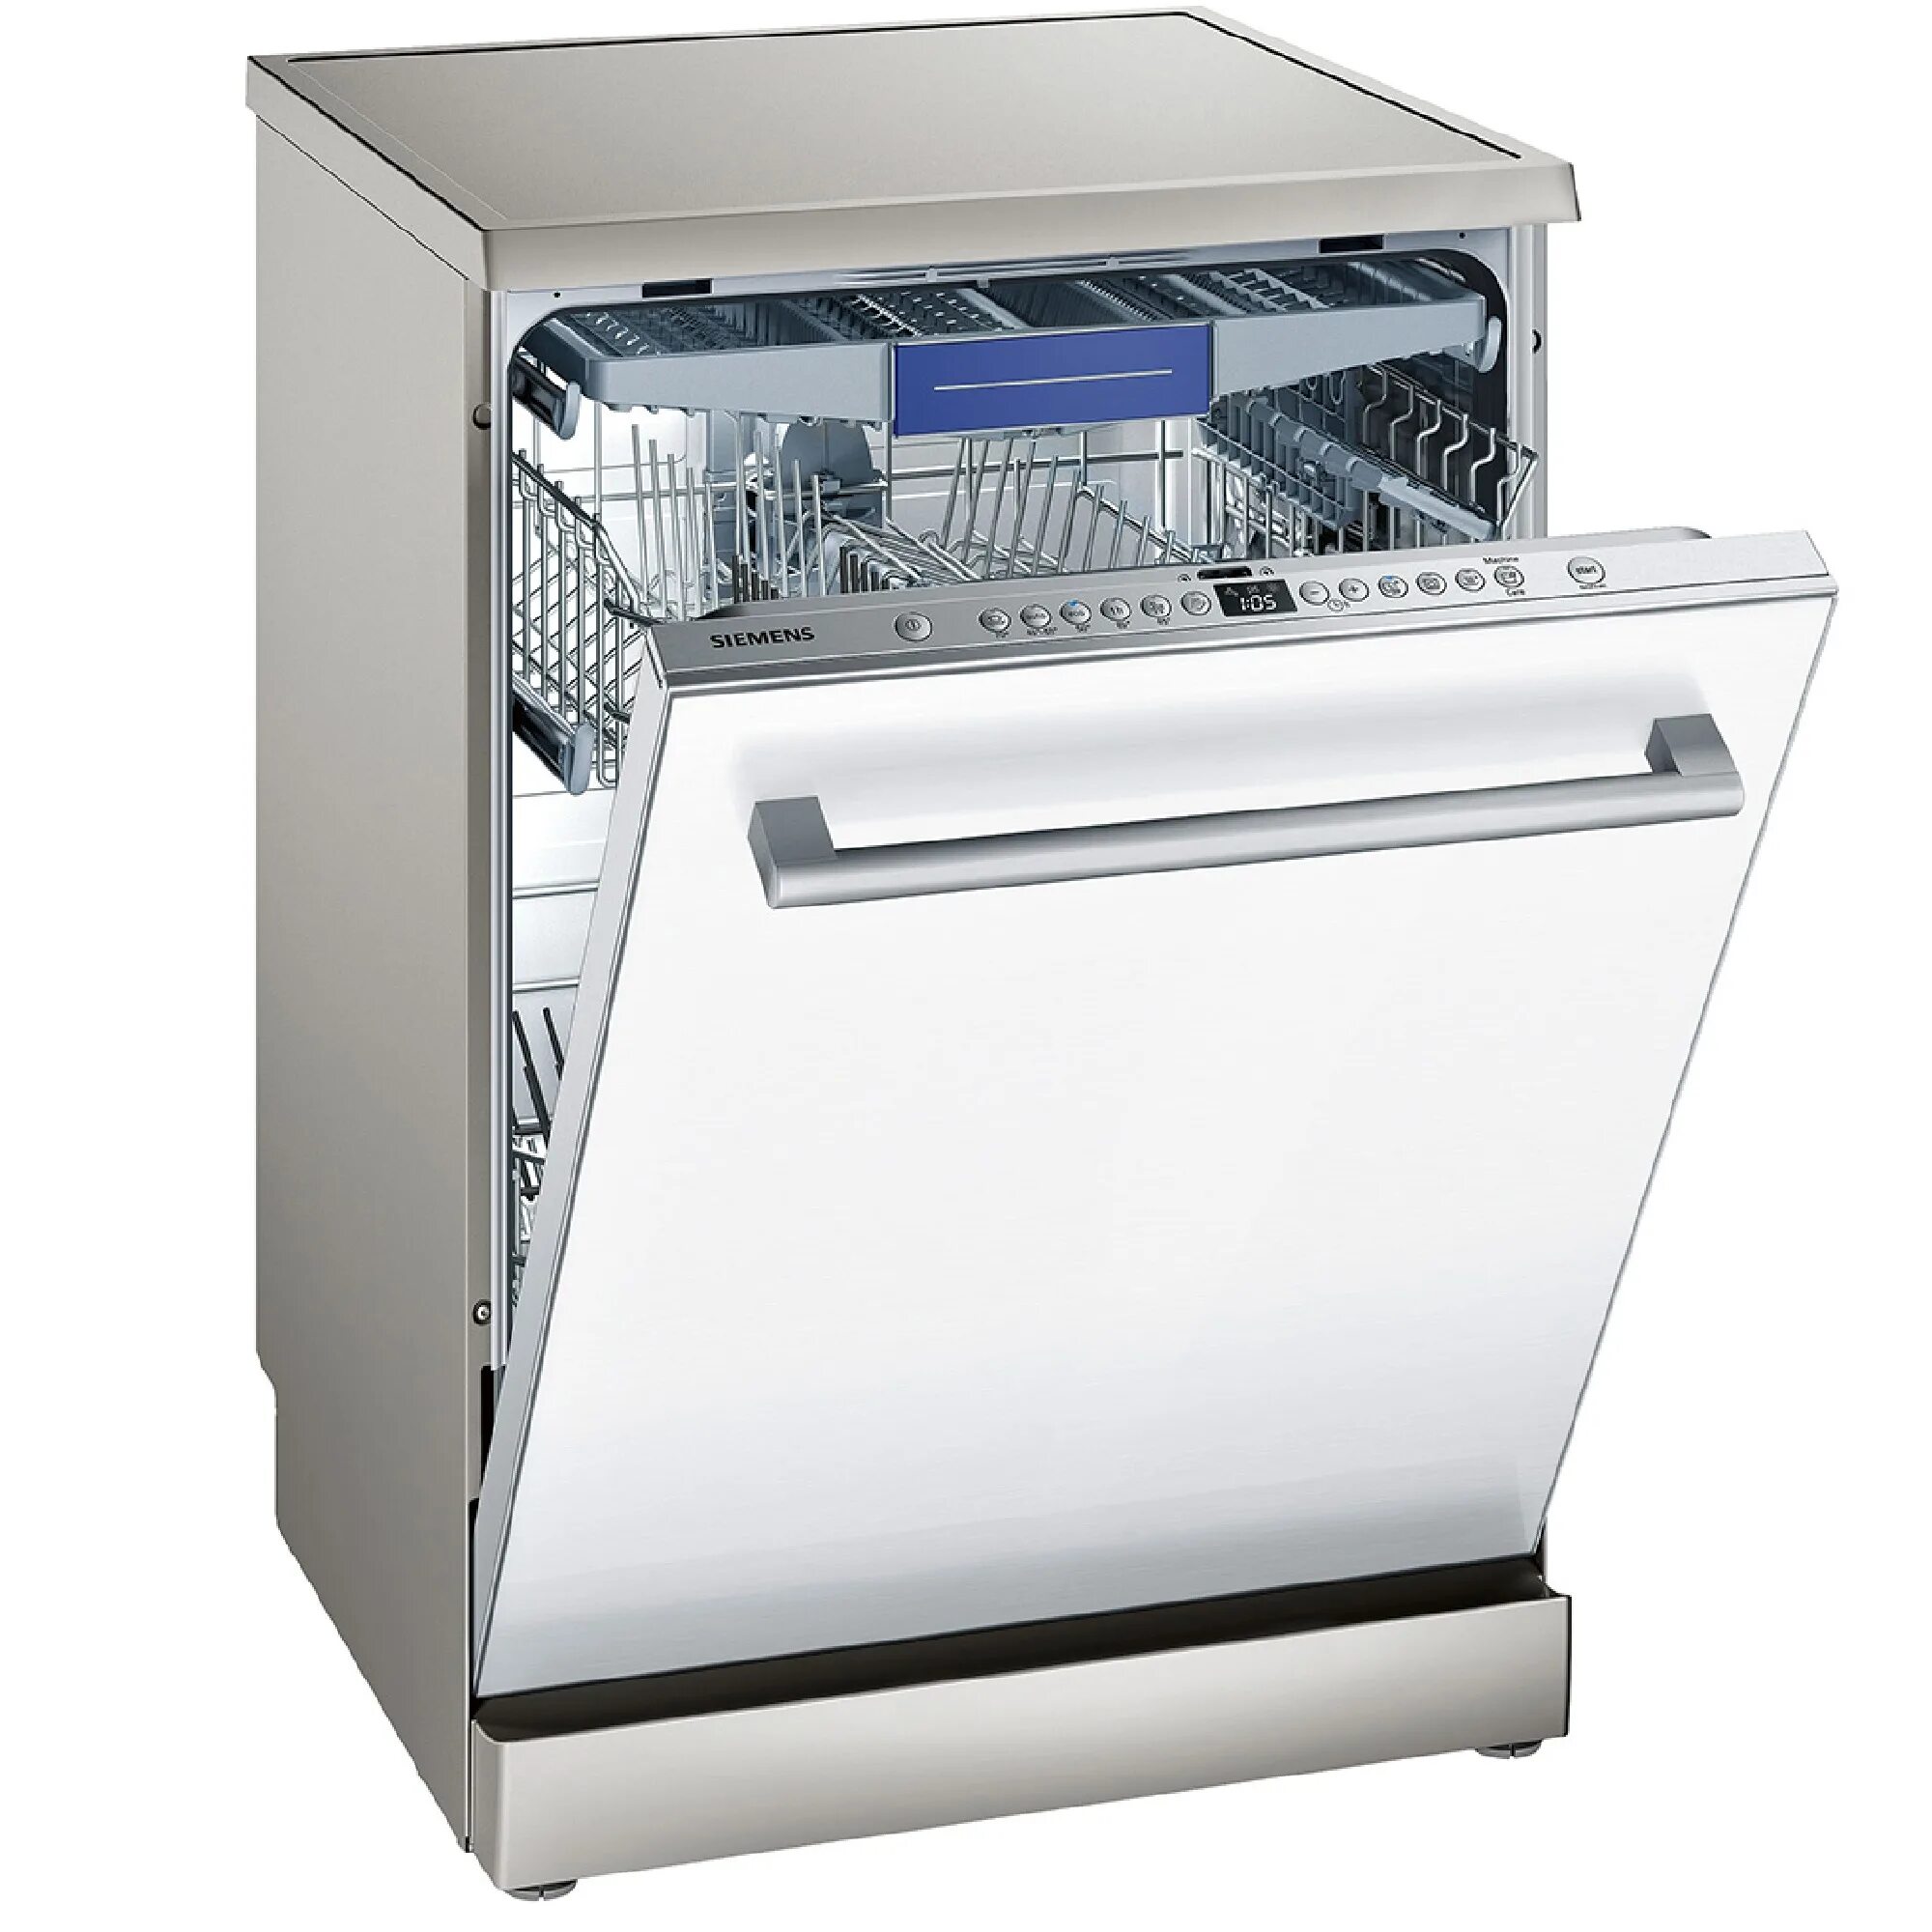 Купить посудомоечную машину видео. Посудомоечная машина Siemens sn65ex57ce. Посудомоечная машина Siemens 60. Посудомоечная машина Siemens 45 отдельностоящая. Посудомоечная машина Сименс 60 см отдельностоящая.